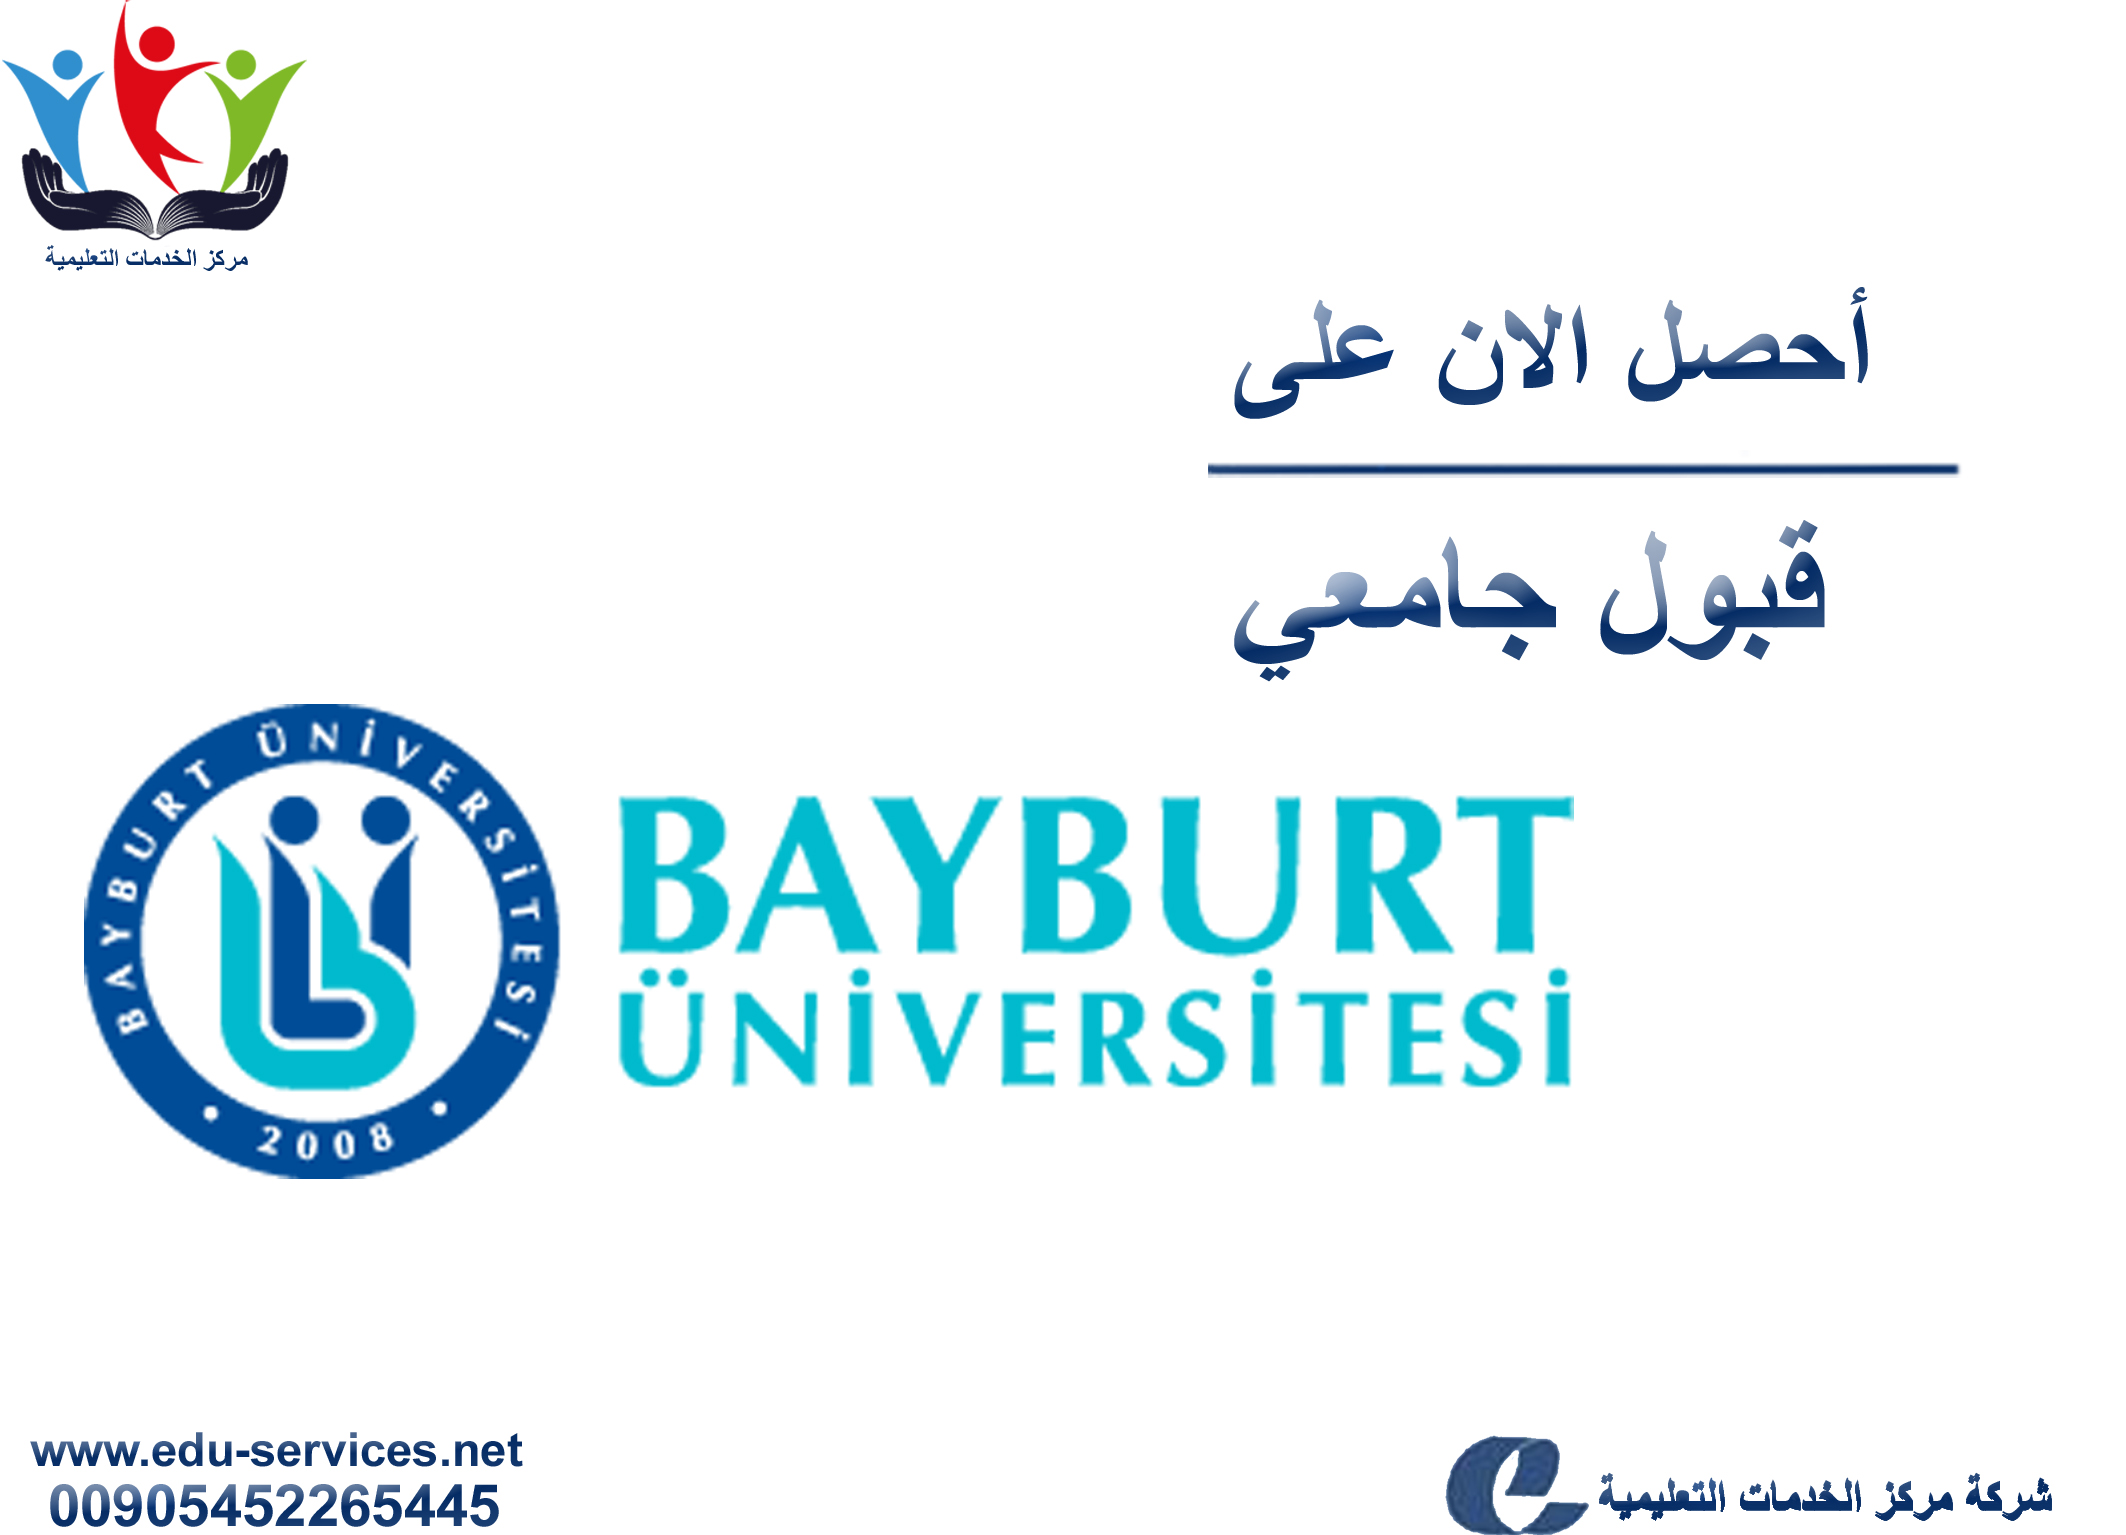 افتتاح التسجيل في جامعة بايبورت للعام 2018-2019